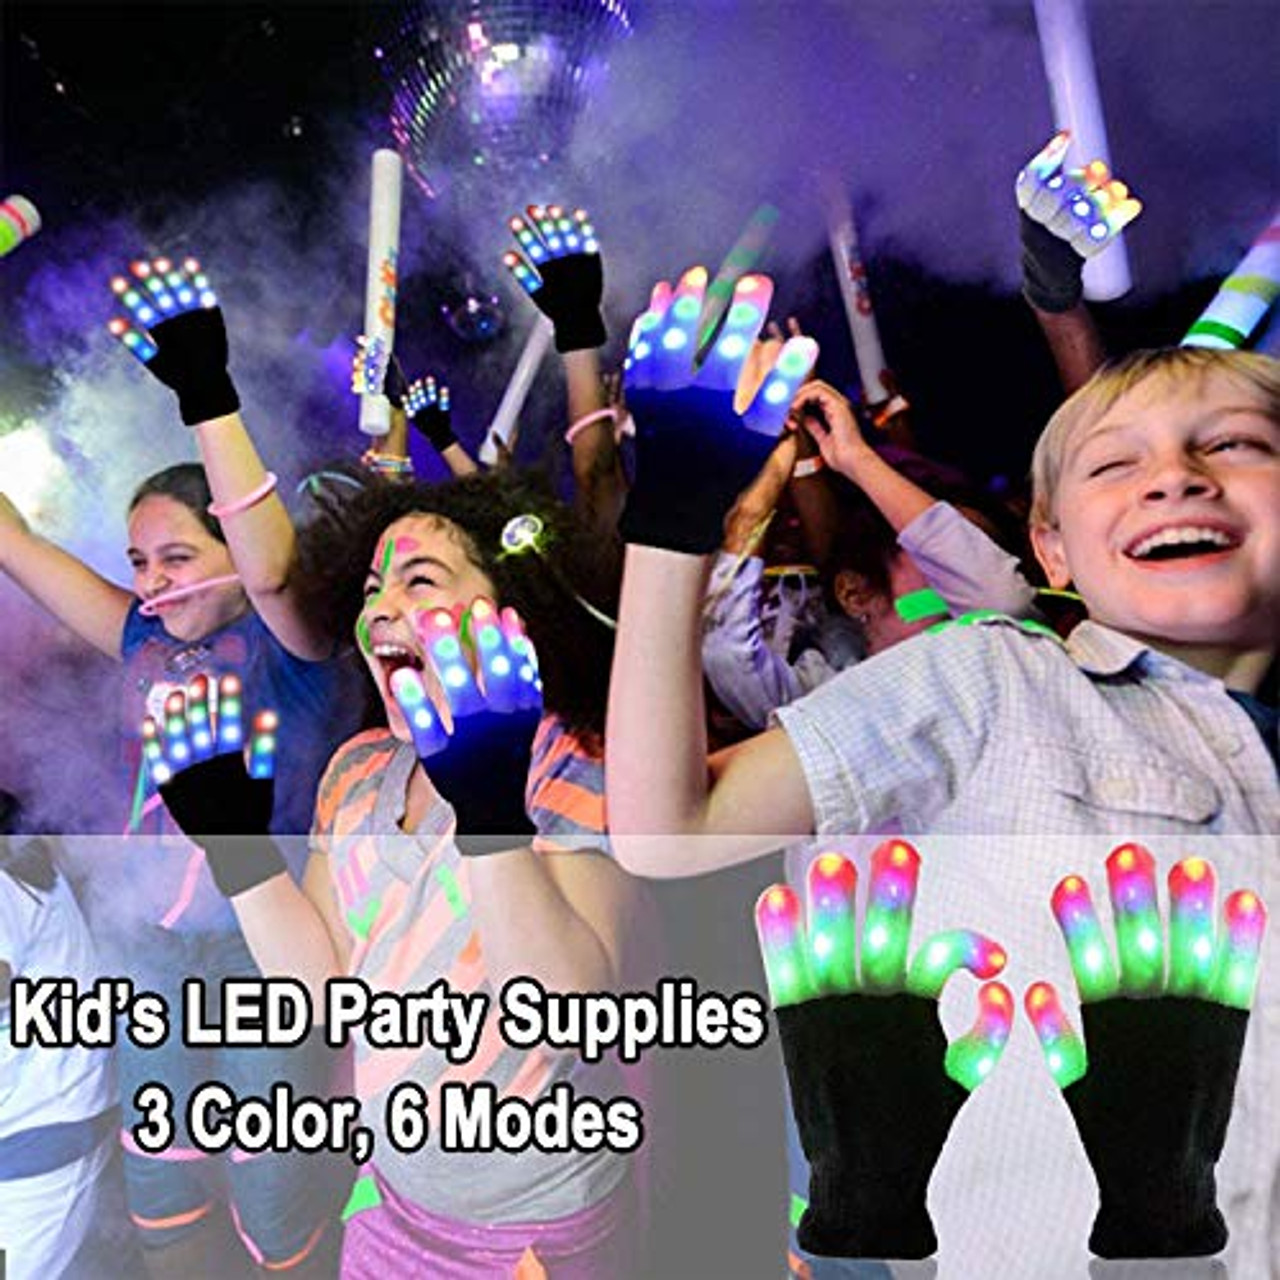 4 Paar LED-Handschuhe, cooles Spielzeug für Kinder und Teenager, LED -Fingerlicht-Handschuhe, blinkende Handschuhe, Strumpffüller, Spielzeug,  Jungen und Mädchen, Geschenk für Weihnachten, Geburtstag, Cosplay,  Kostümparty – OceanBargains